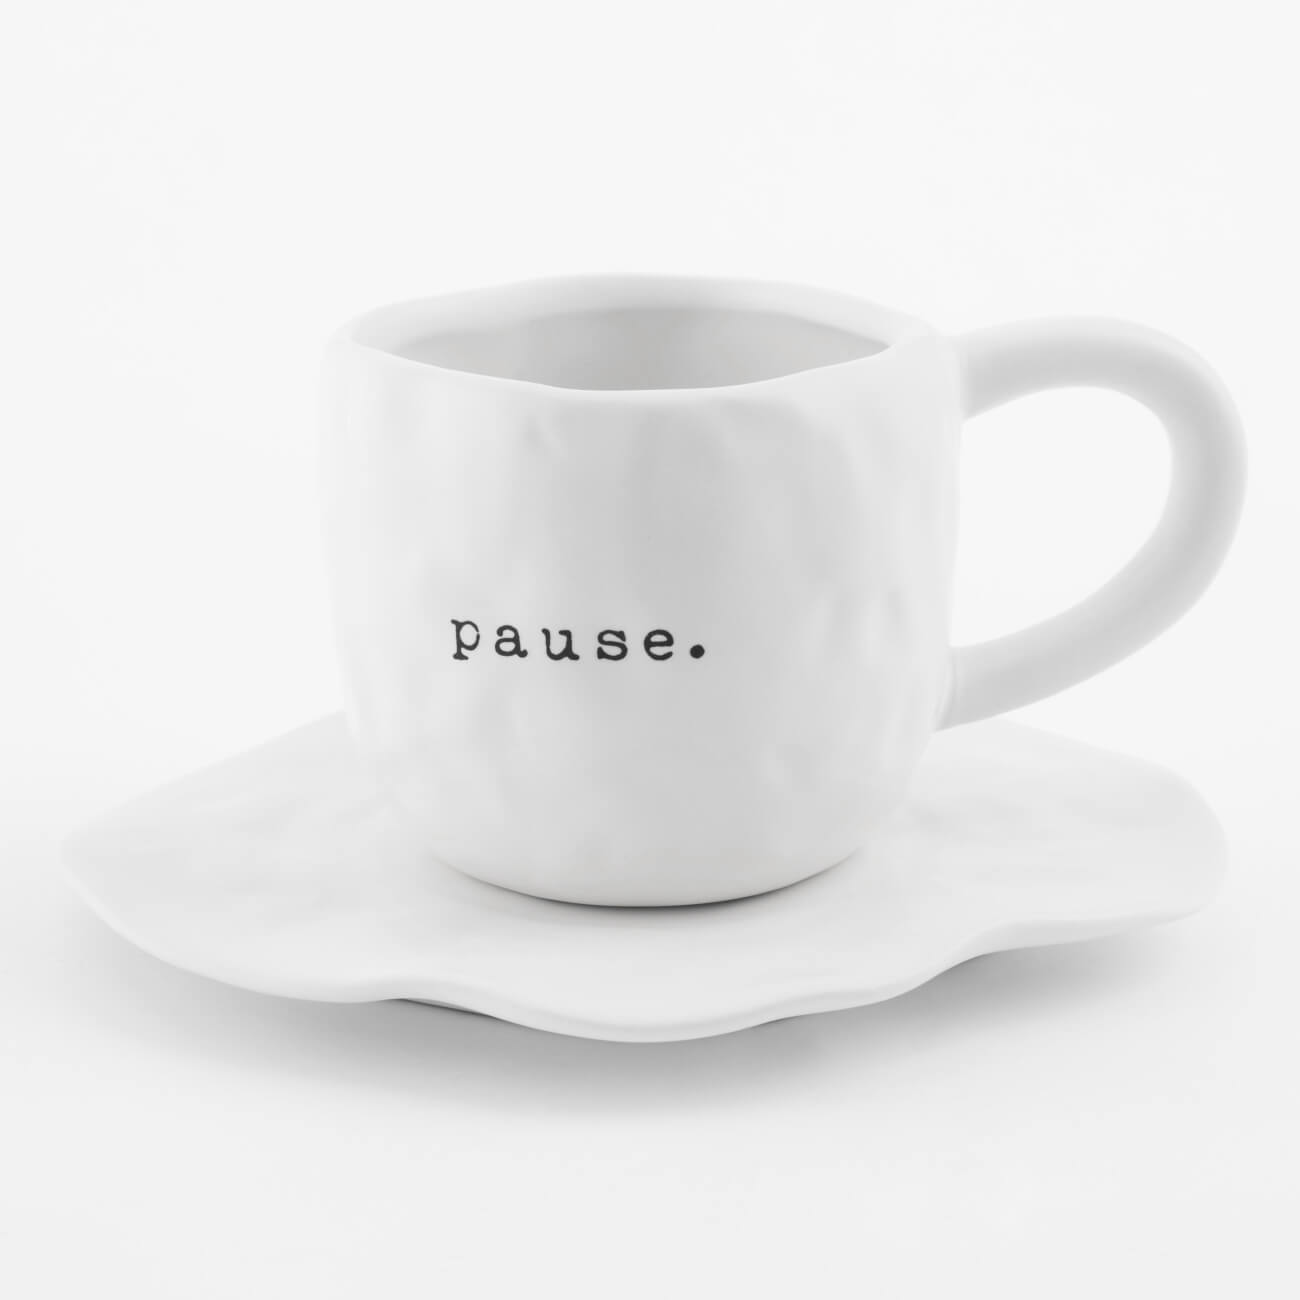 Пара чайная, 1 перс, 2 пр, 420 мл, керамика, белая, Pause, Crumple font чайная пара nouvelle